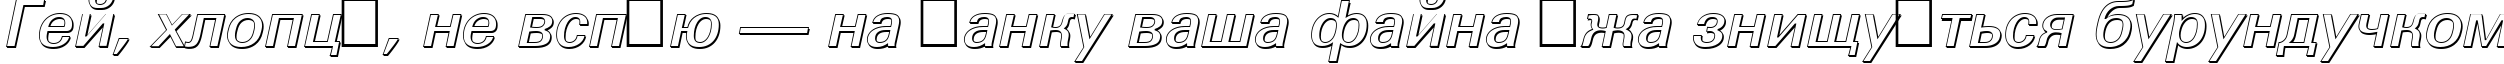 Пример написания шрифтом a_GroticSh Bold Italic текста на украинском